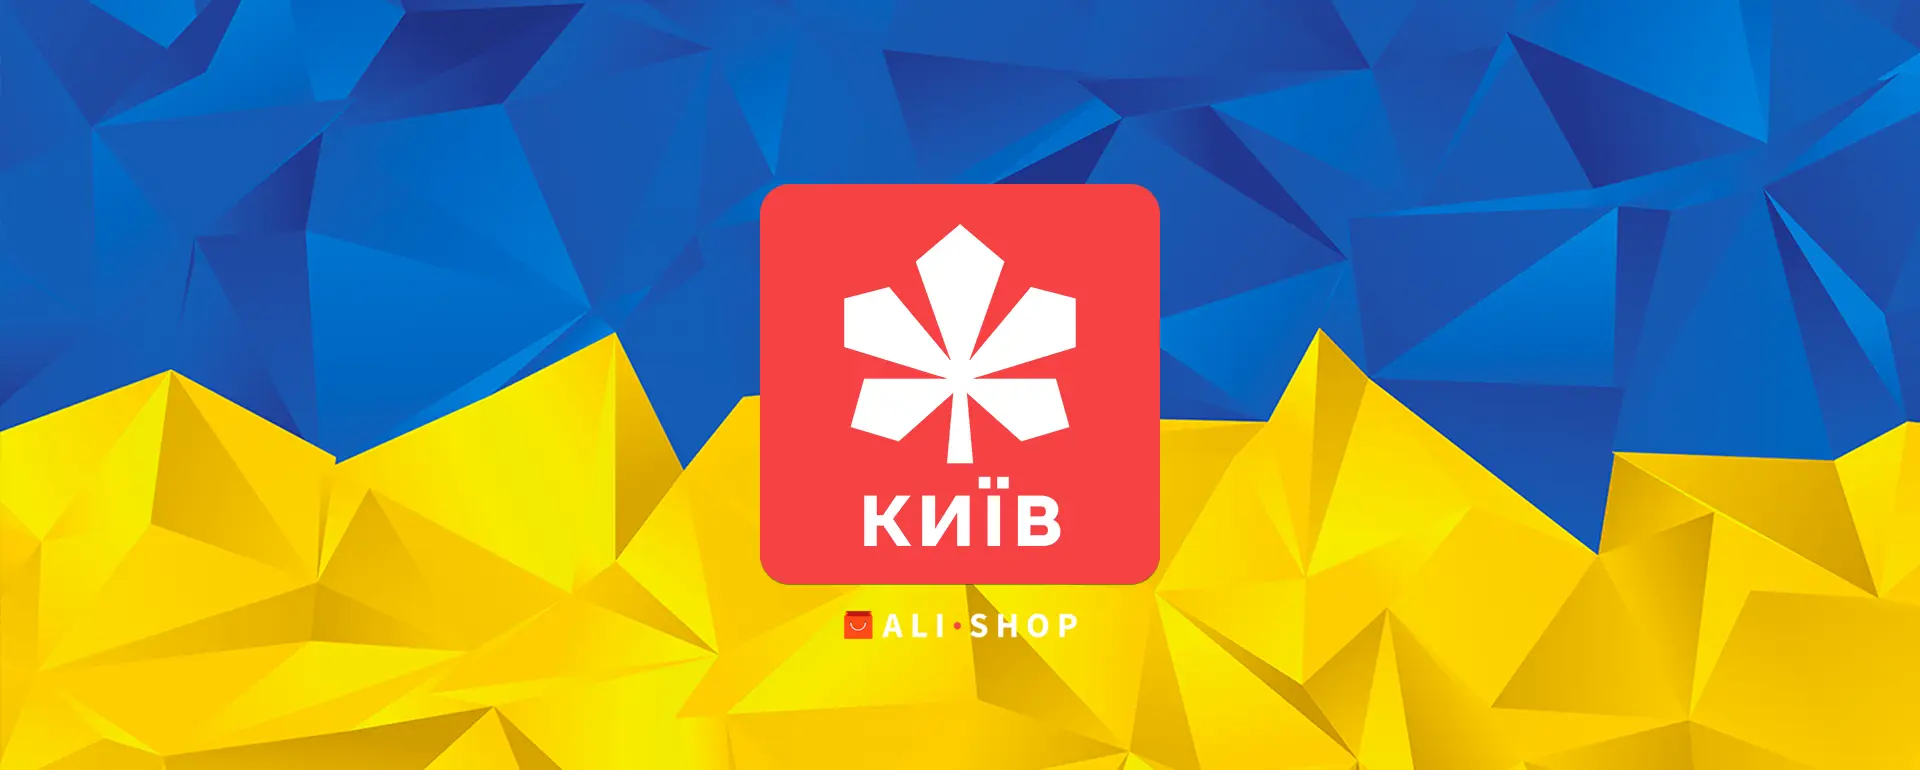 AliExpress Киев – как заказать с доставкой и получить скидку